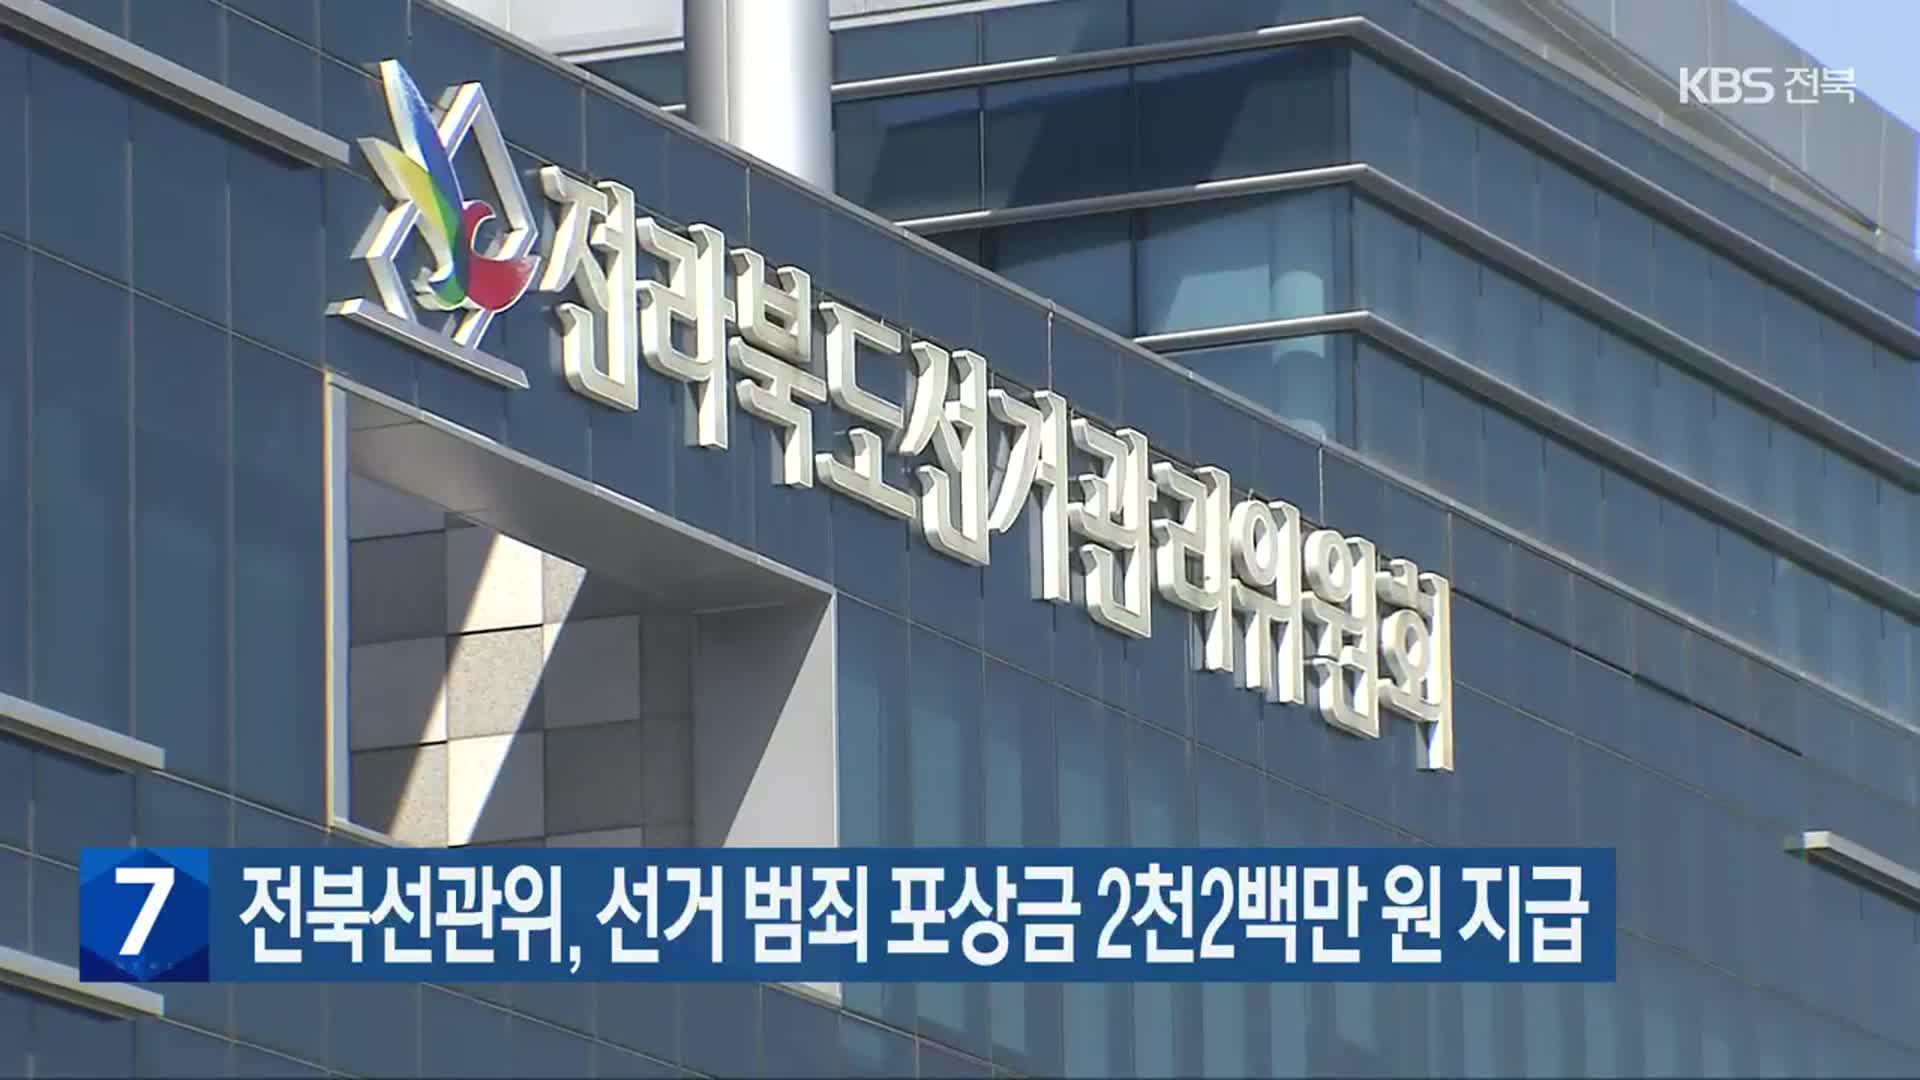 전북선관위, 선거 범죄 포상금 2천2백만 원 지급